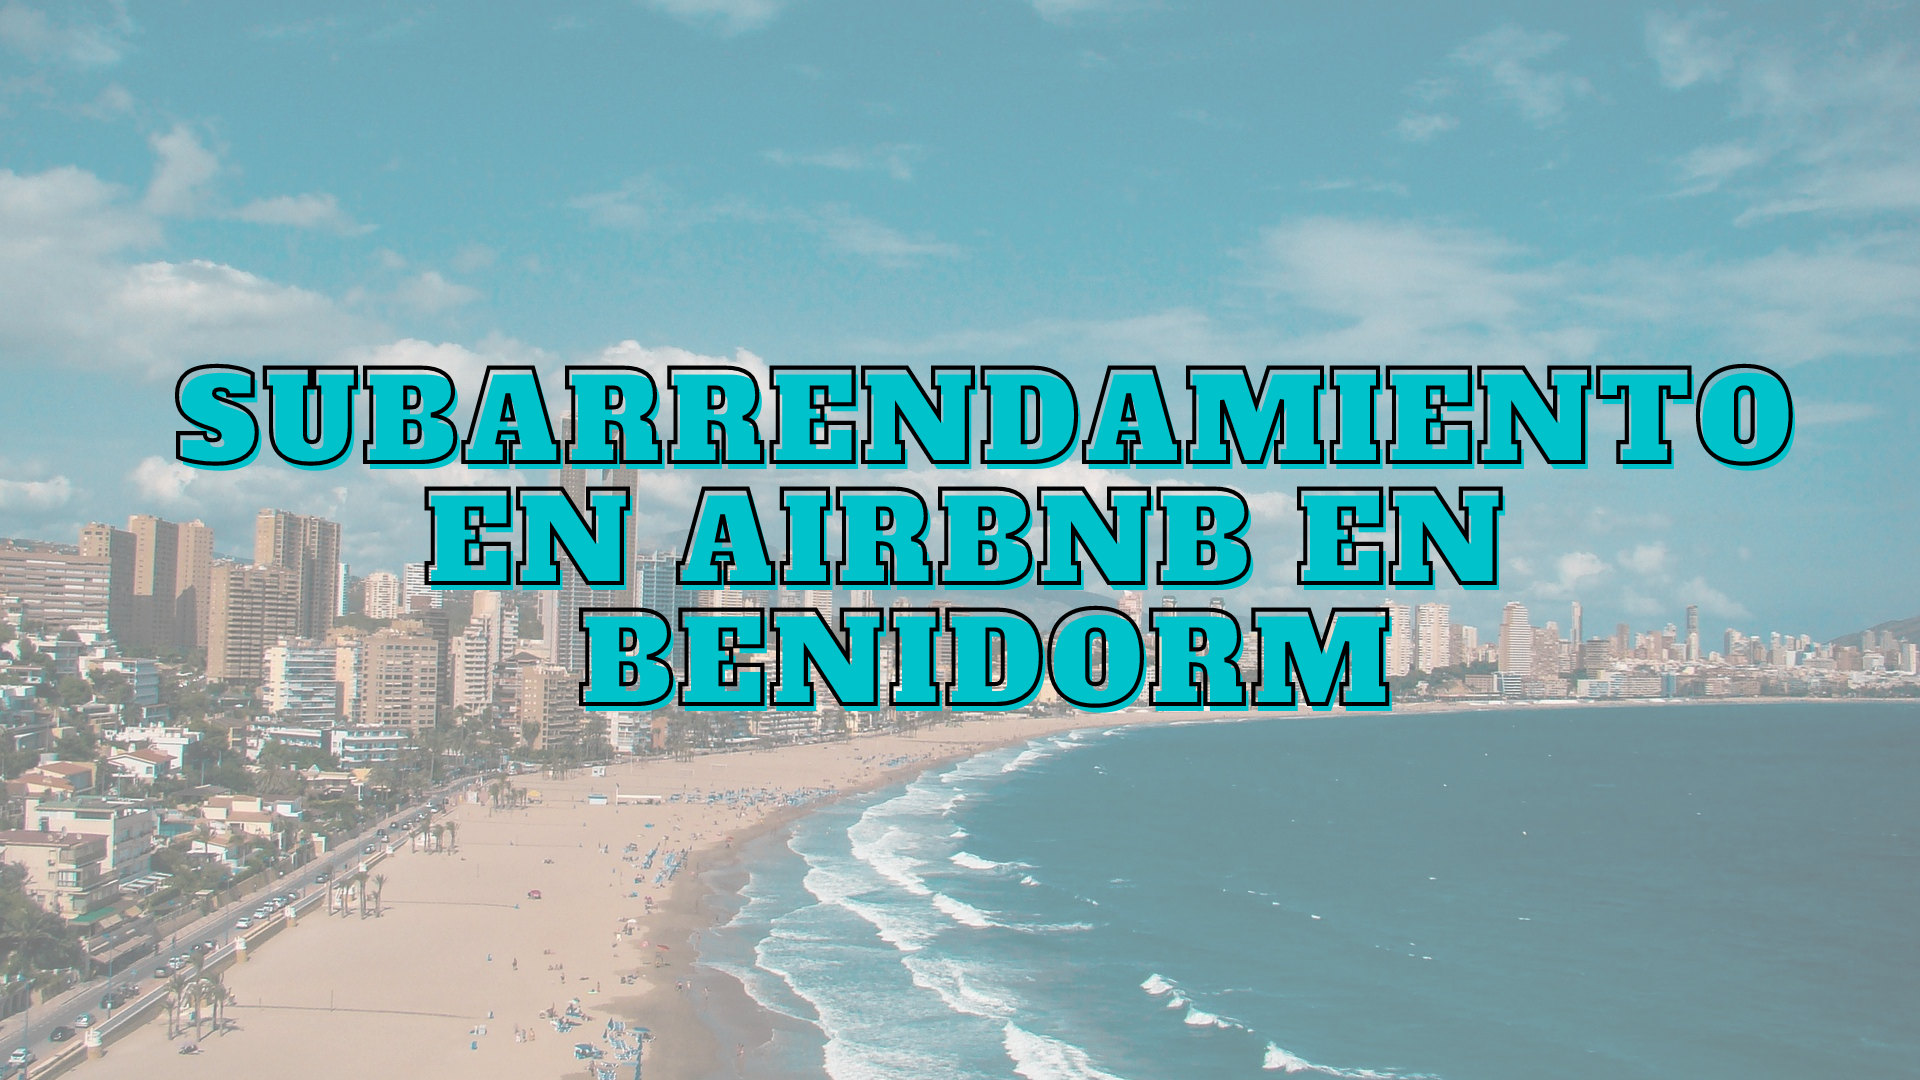 Subarrendamiento Airbnb Benidorm